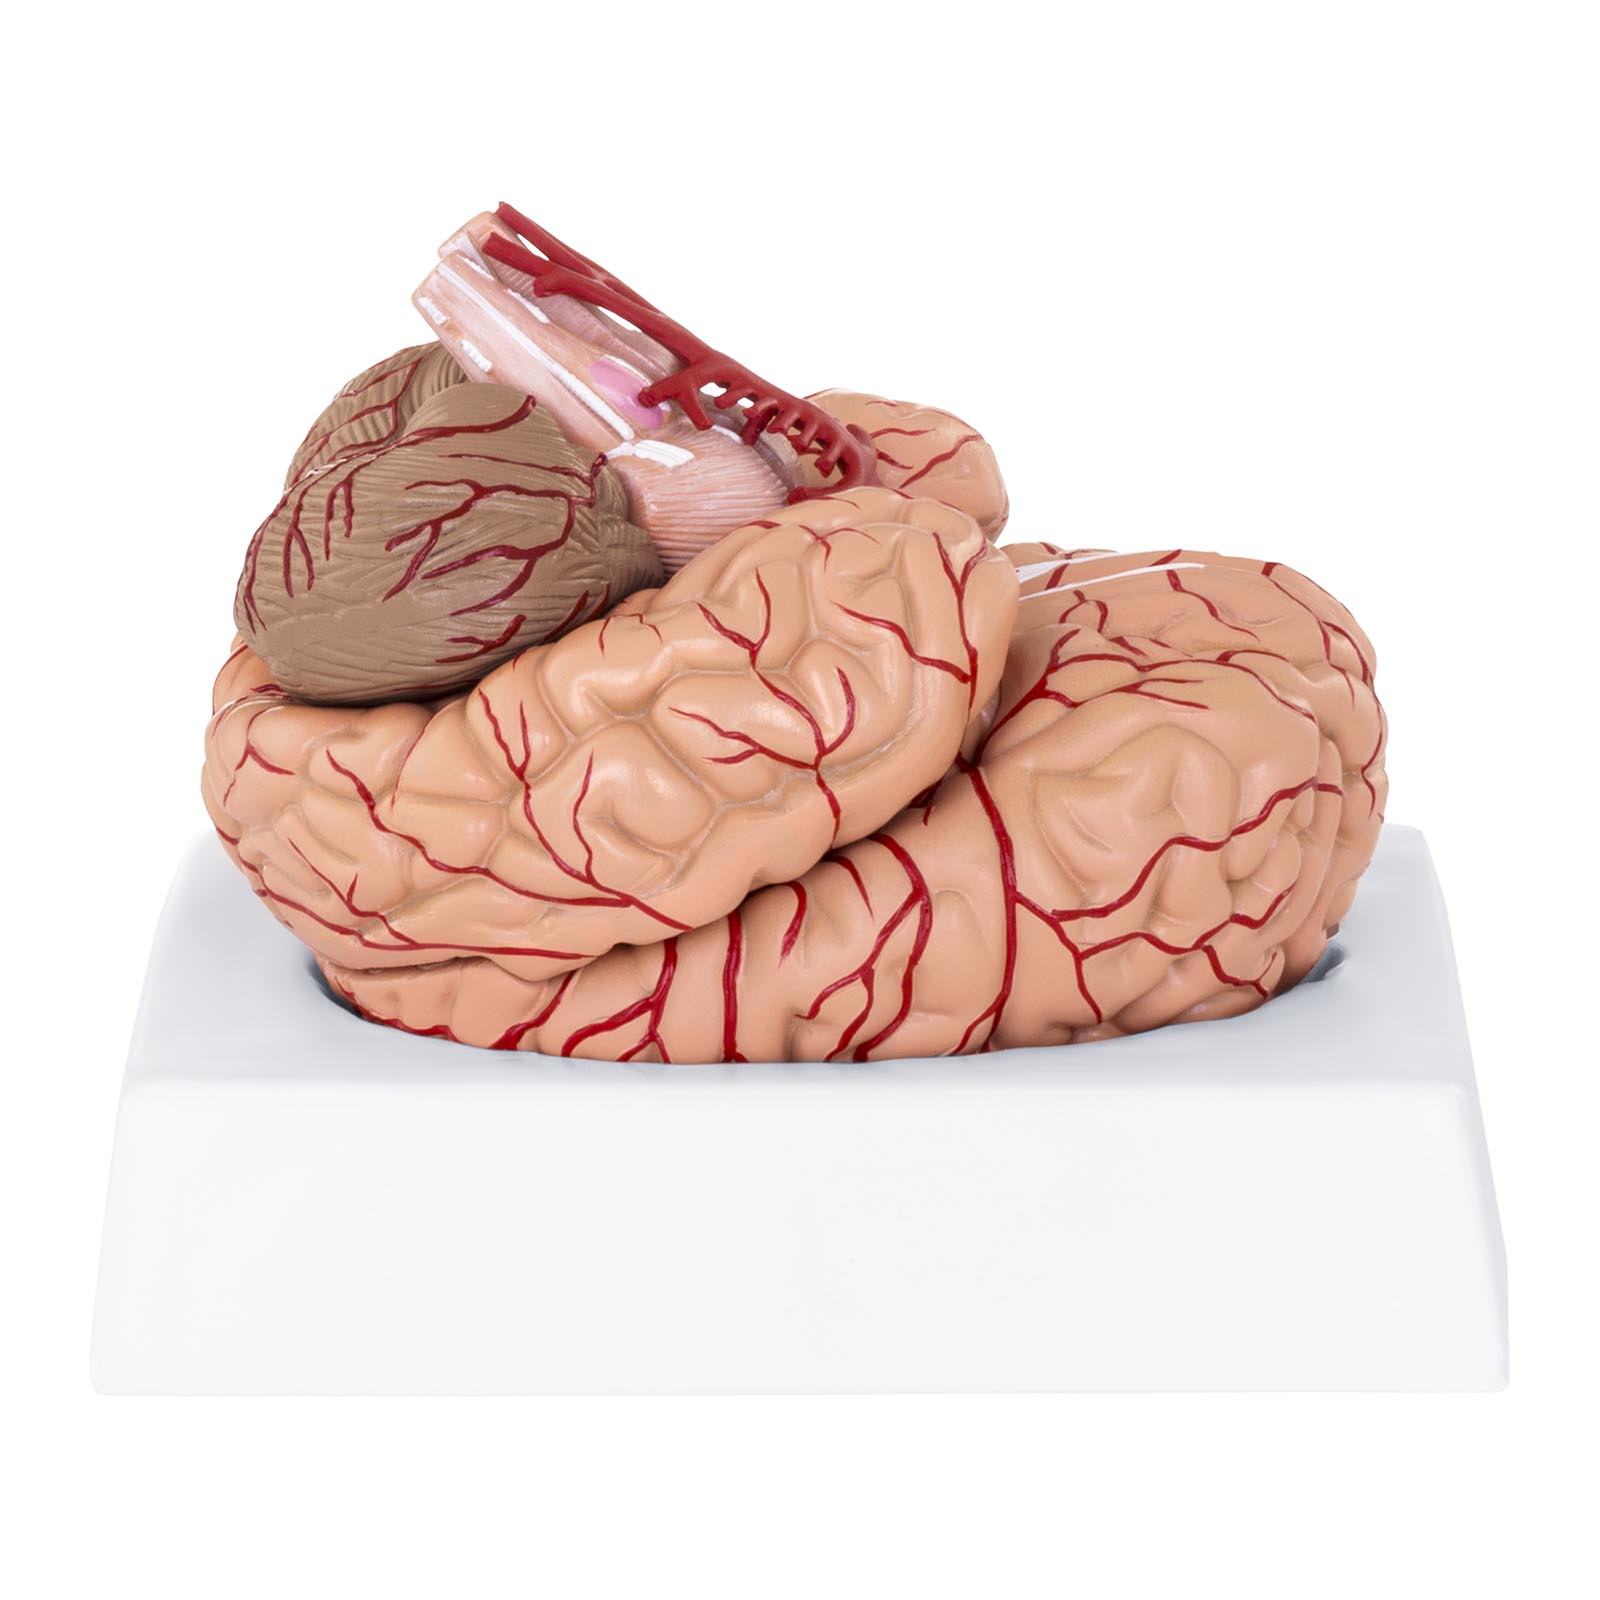 Modelo de cerebro - 9 segmentos - tamaño natural